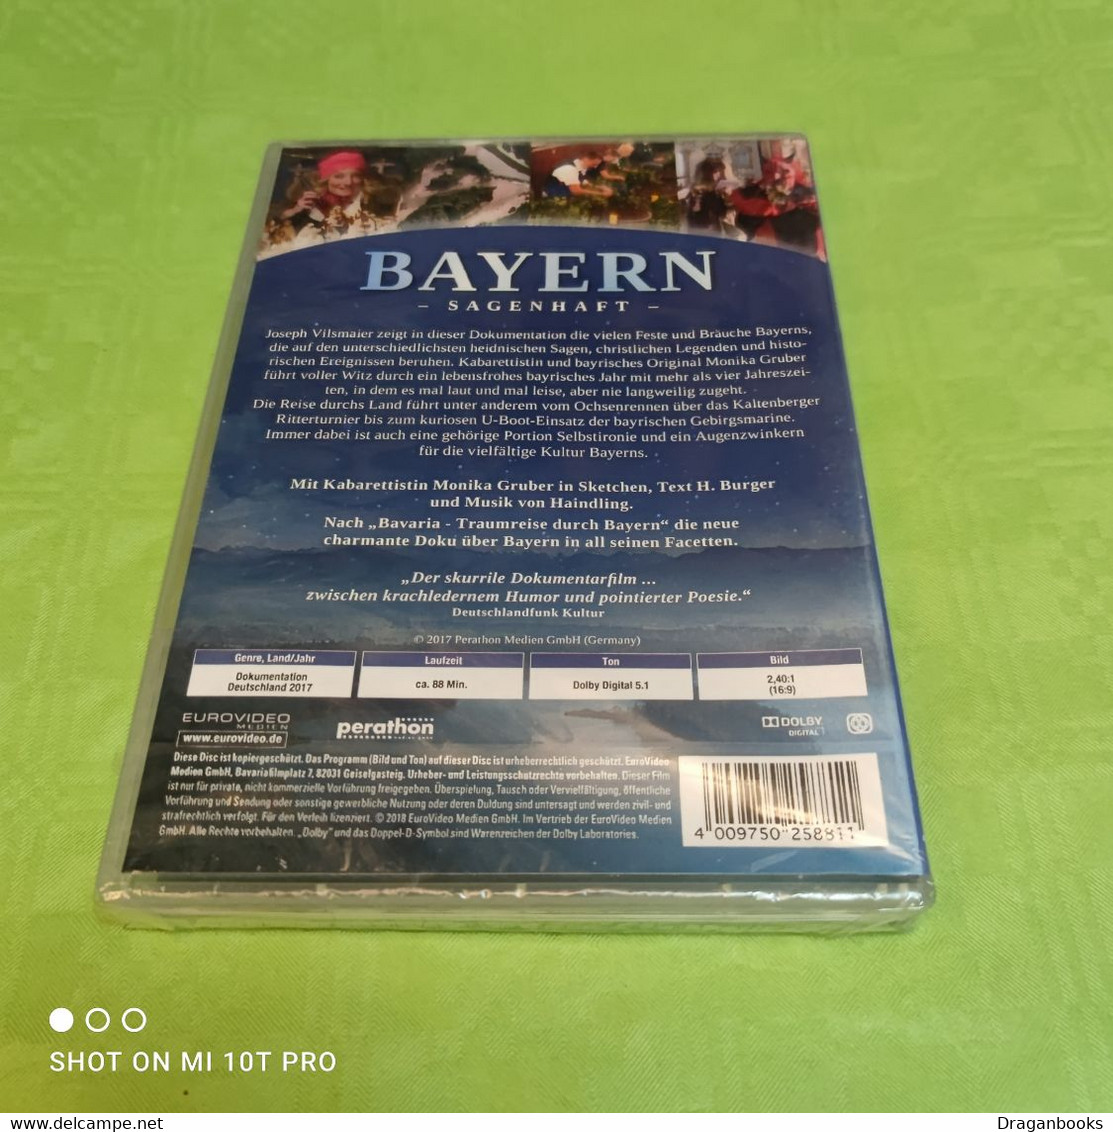 Bayern Sagenhaft - Voyage